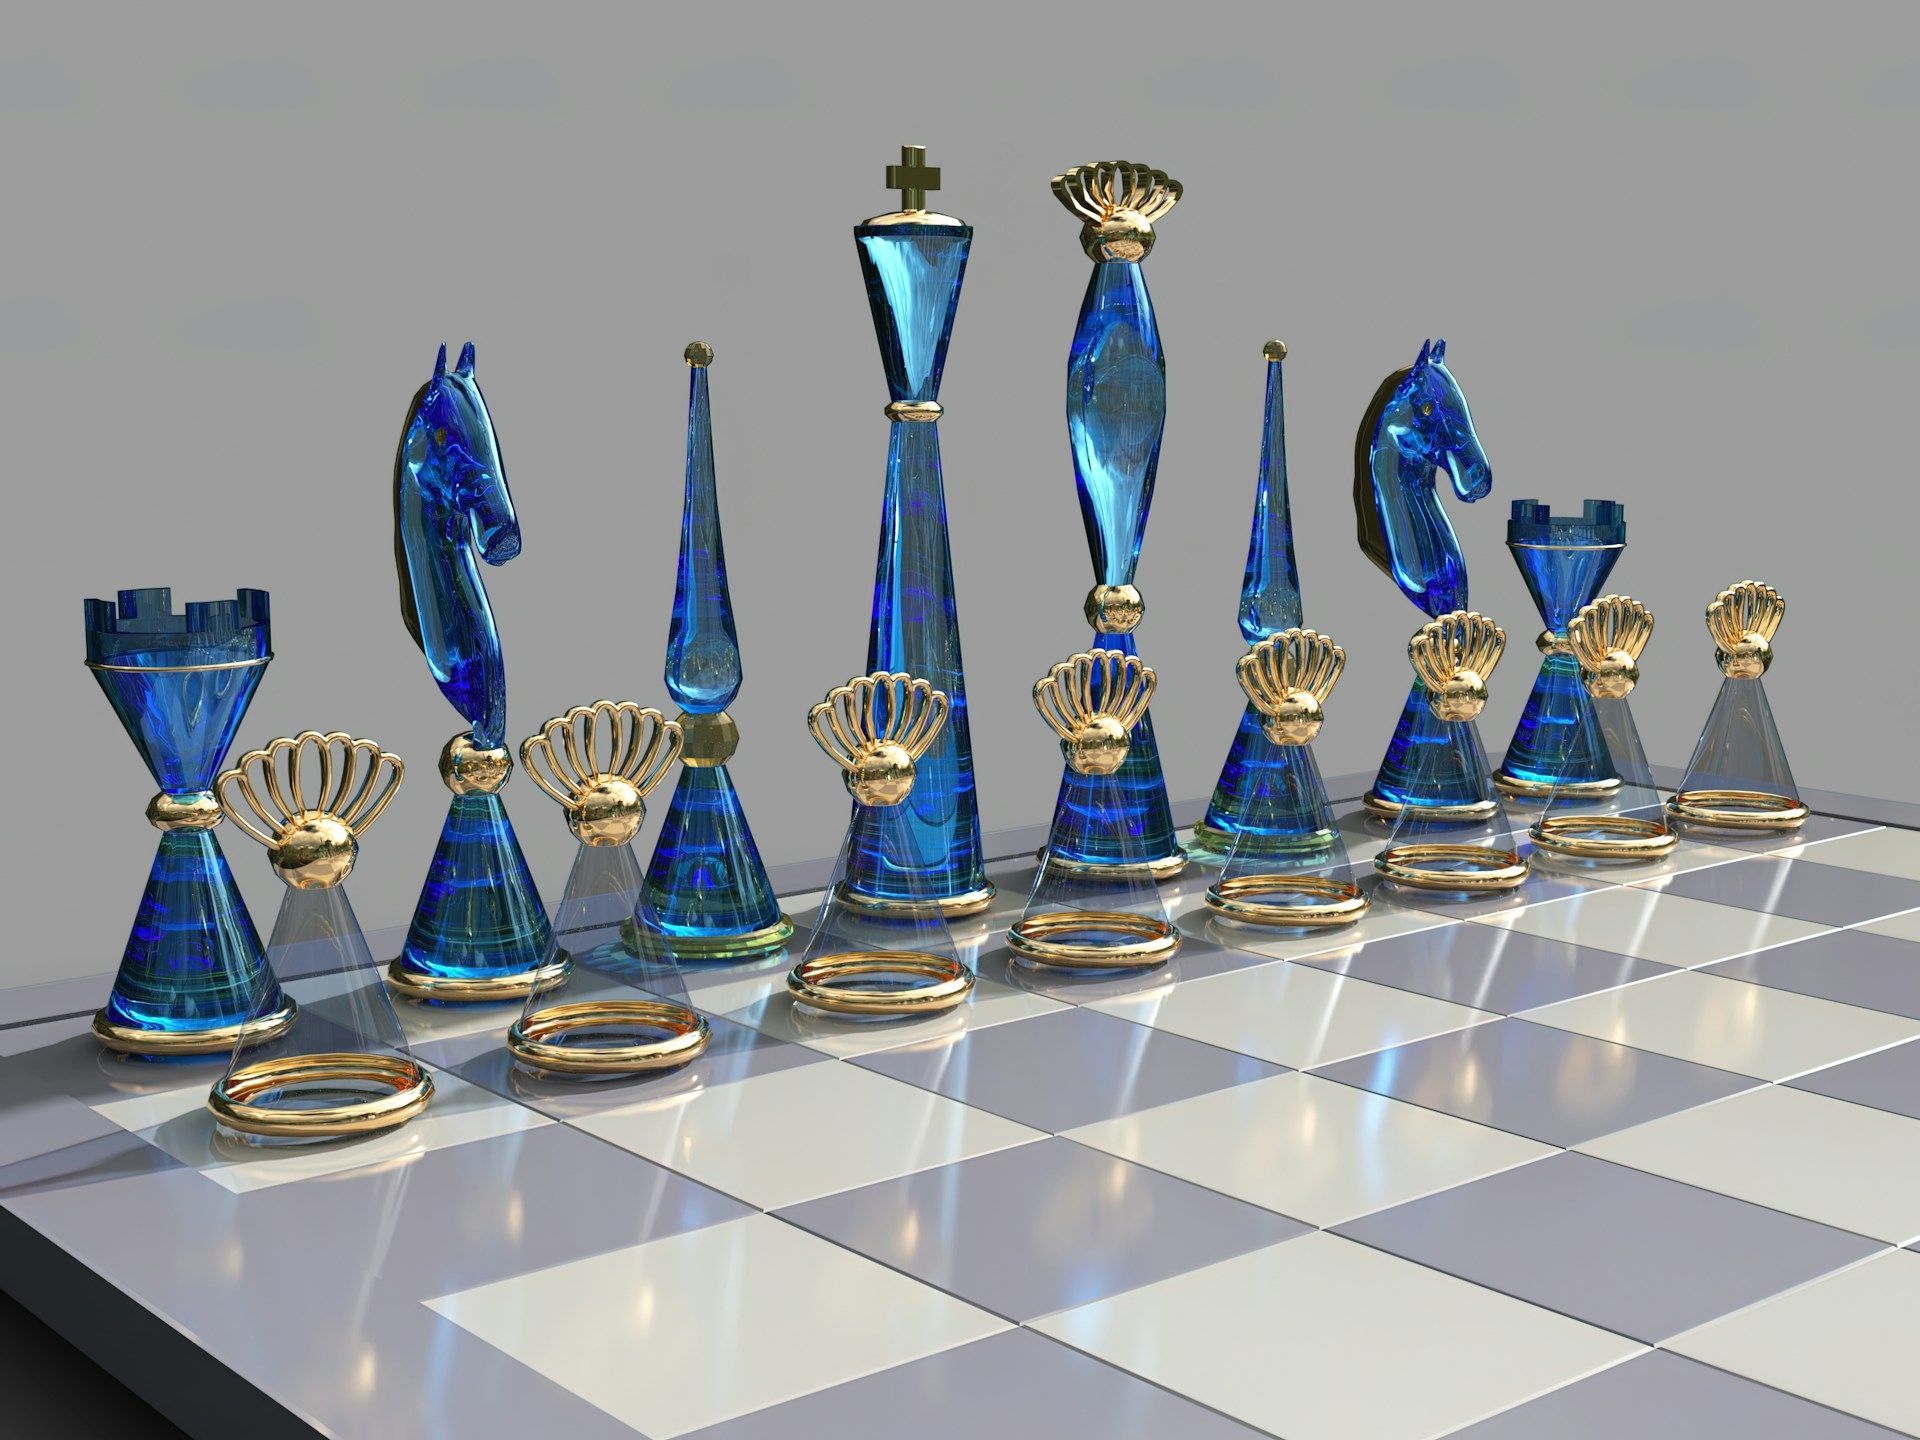 Будущее онлайн-шахмат - инновации и глобальные перспективы